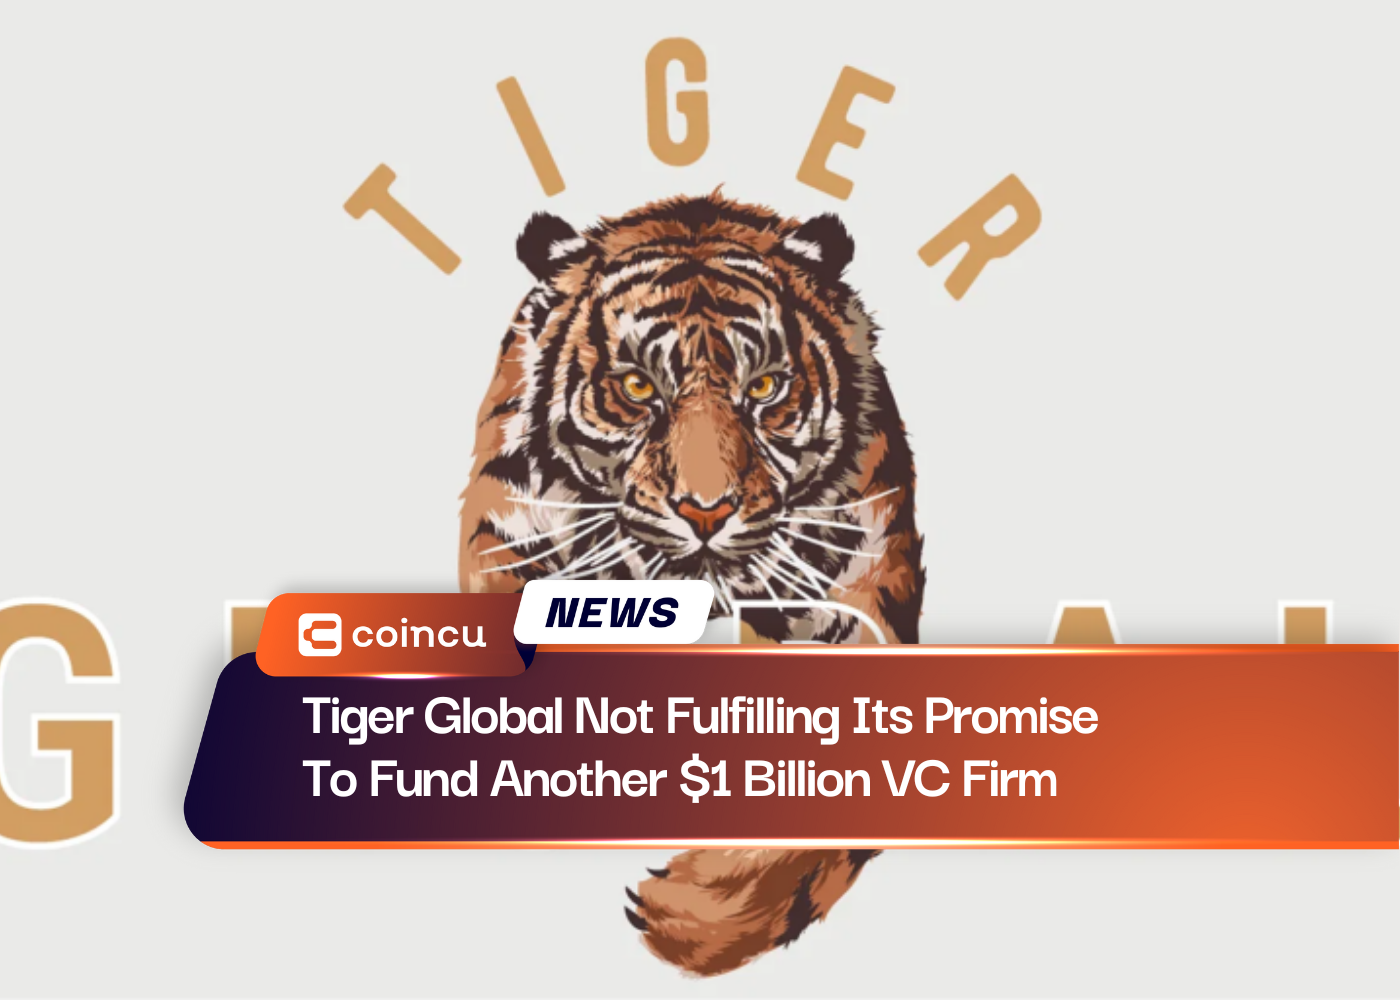 Tiger Global ne tient pas sa promesse de financer une autre société de capital-risque d'un milliard de dollars